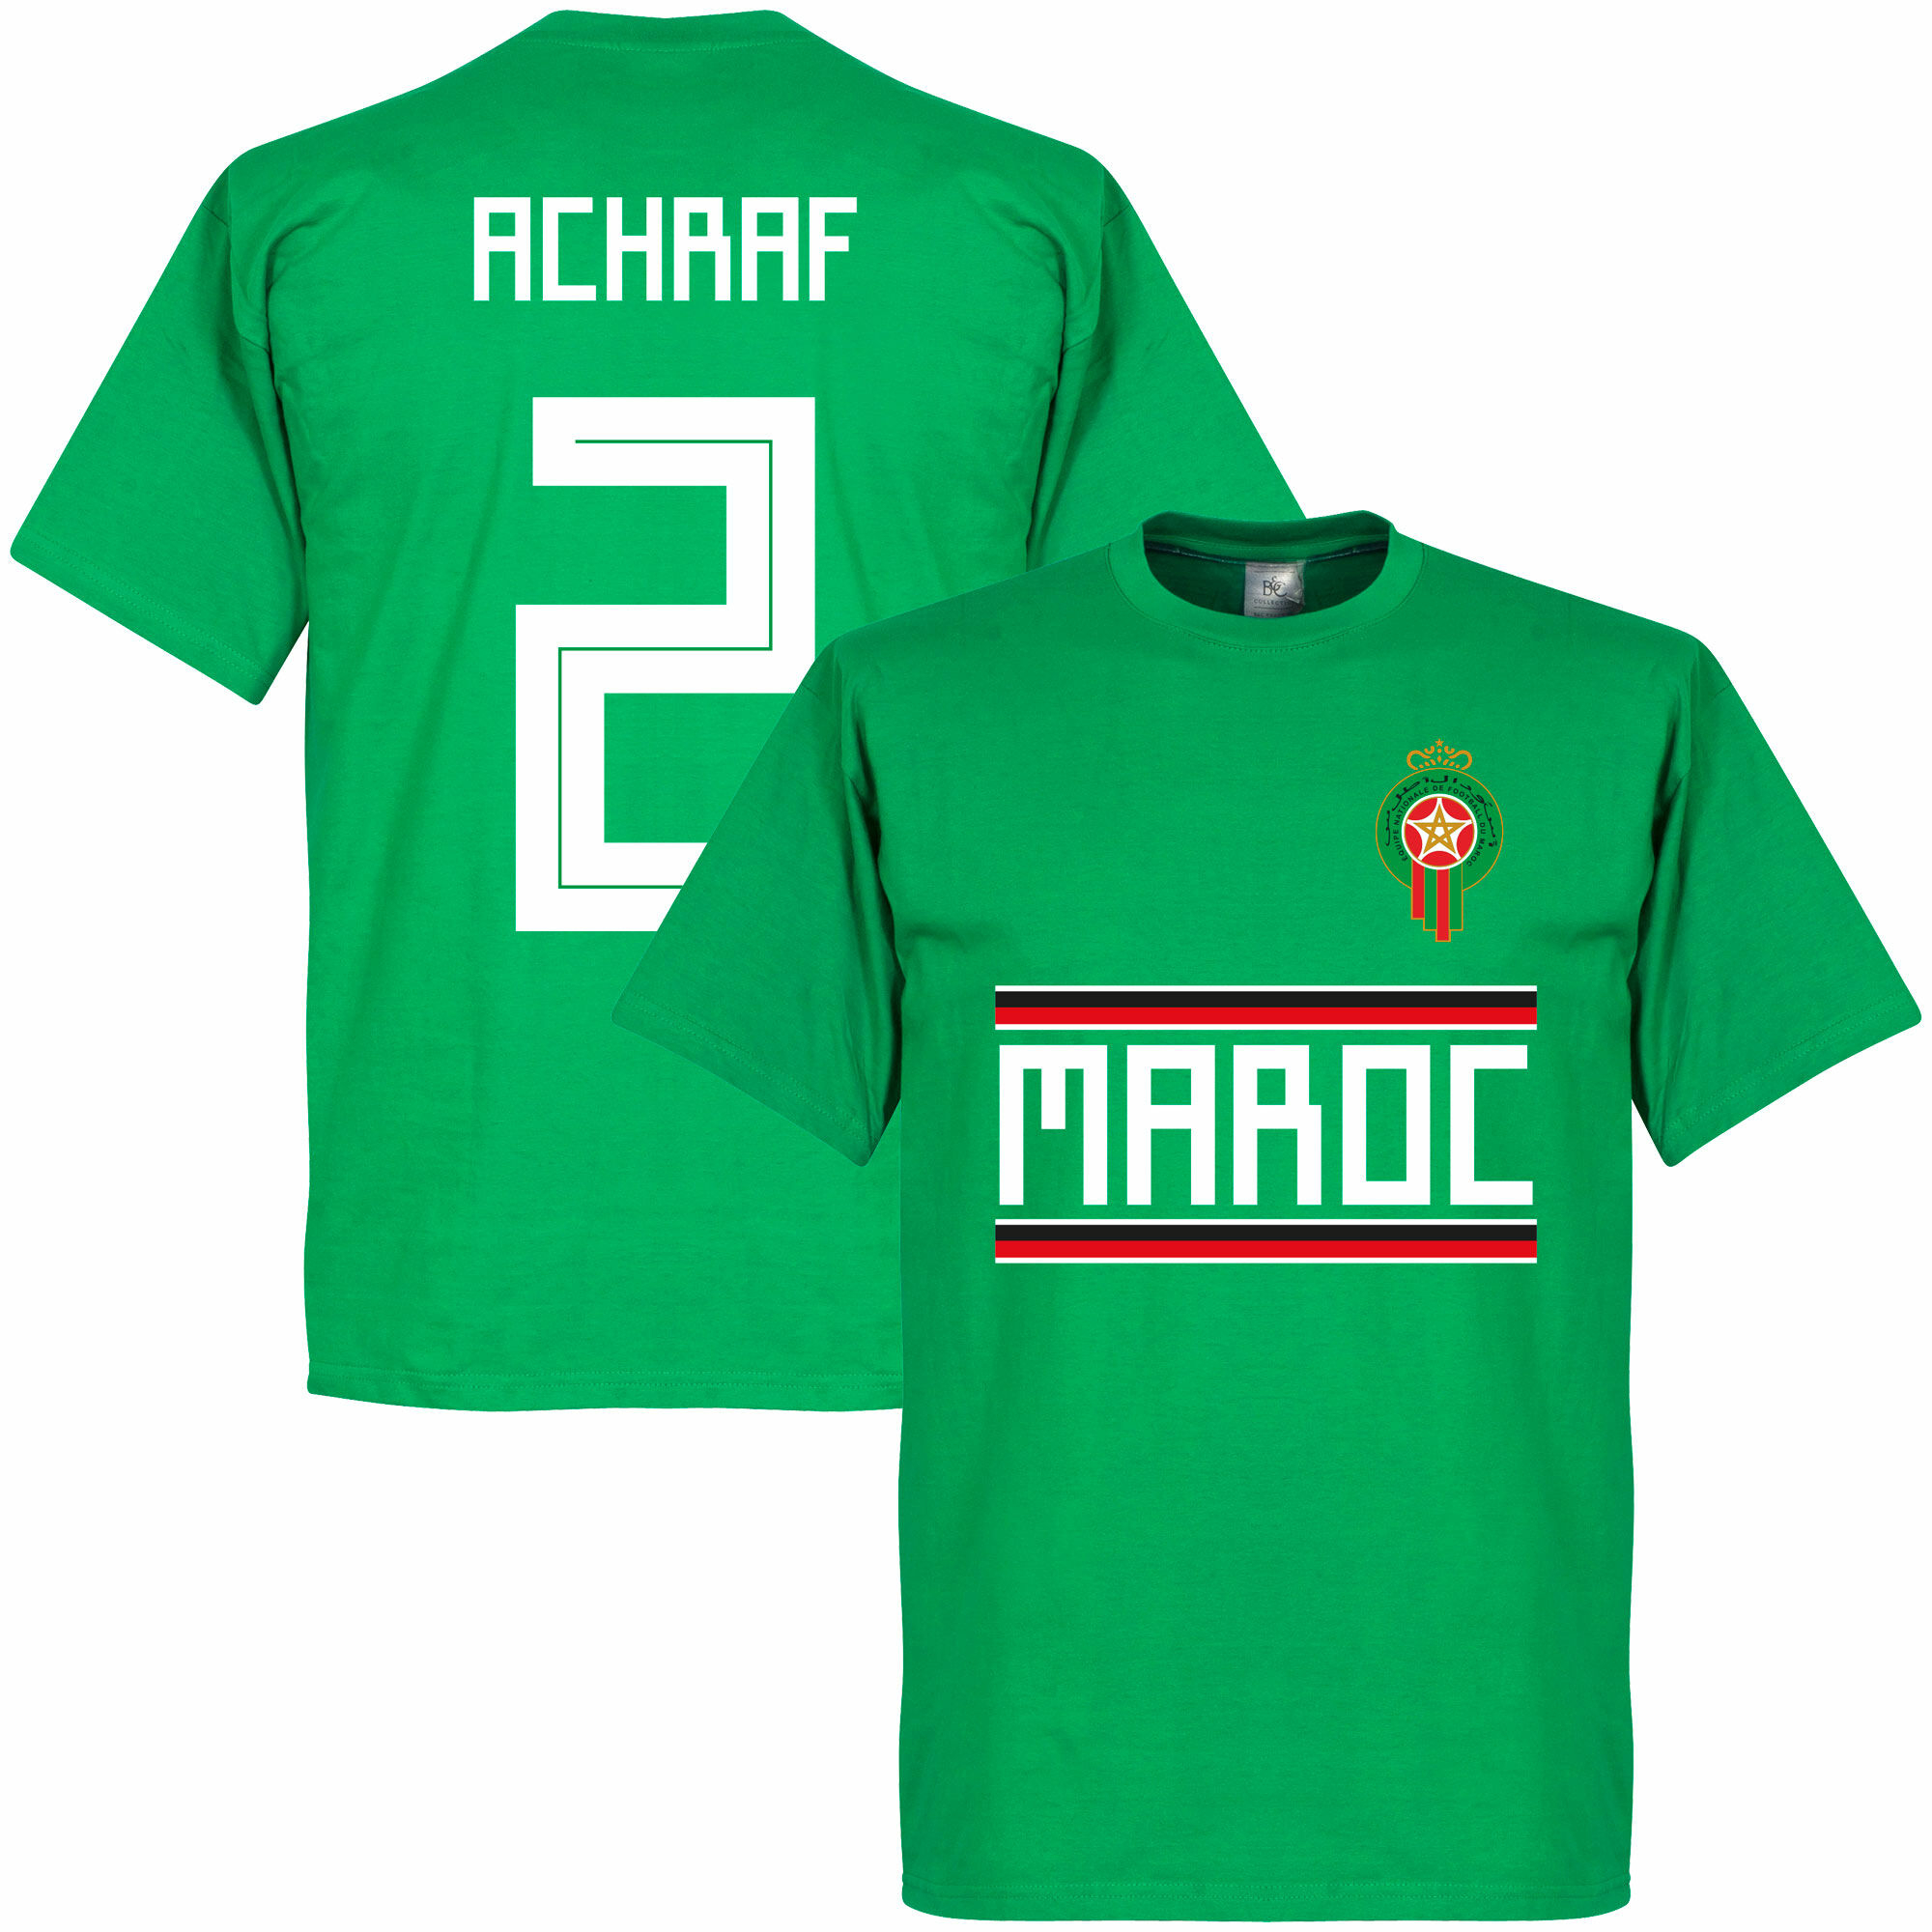 Maroko - Tričko - Achraf Hakimi, zelené, číslo 2